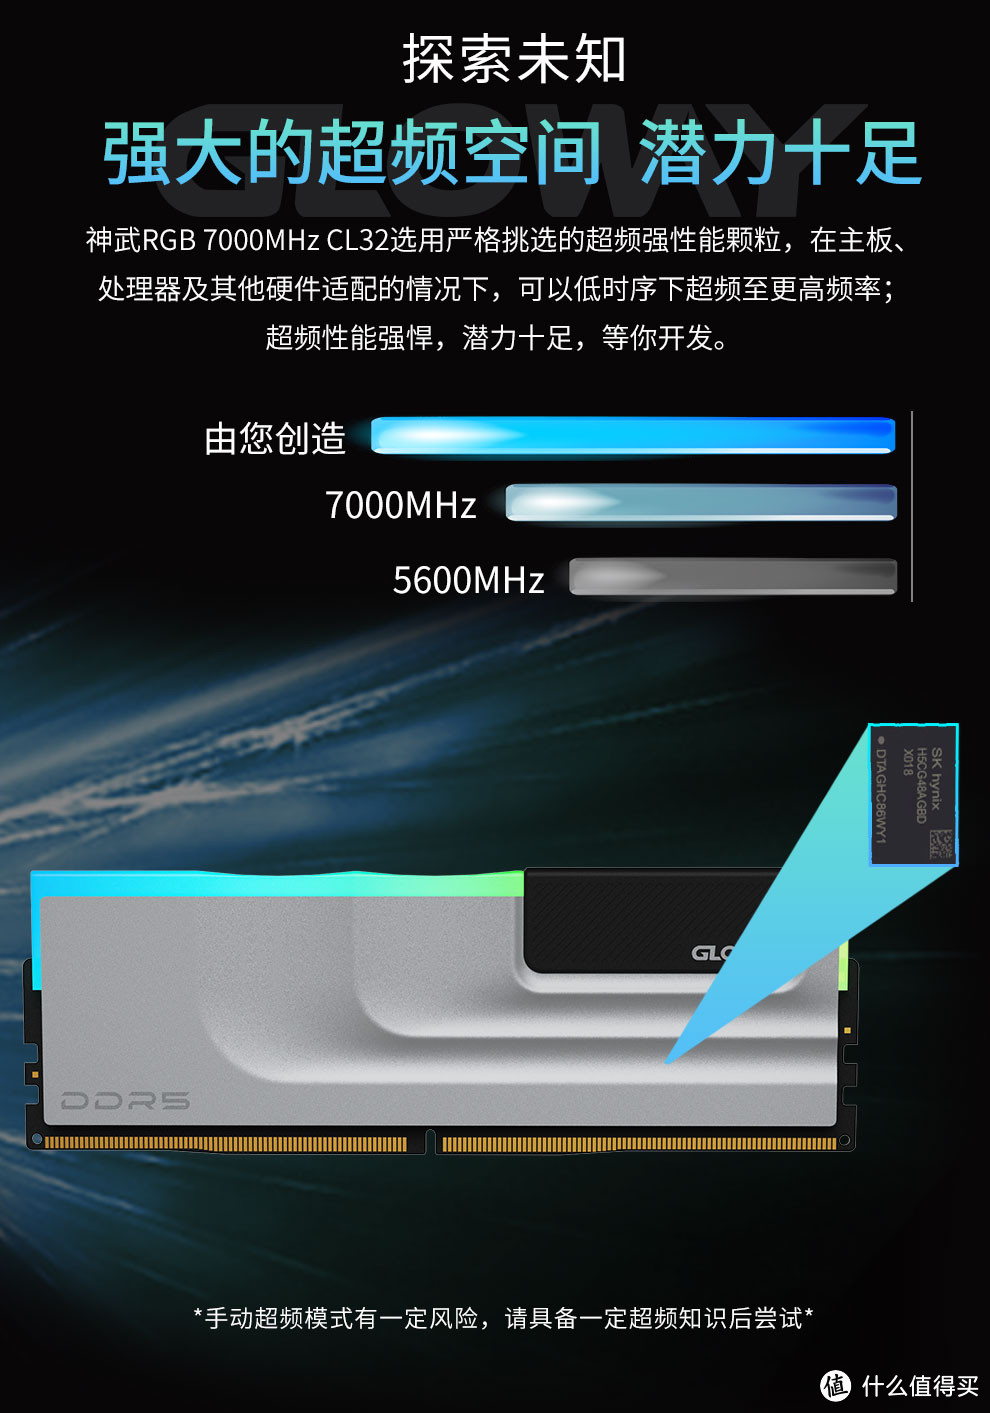 打响高端内存性价比的第一枪，光威神武DDR5 7000新品特惠上线